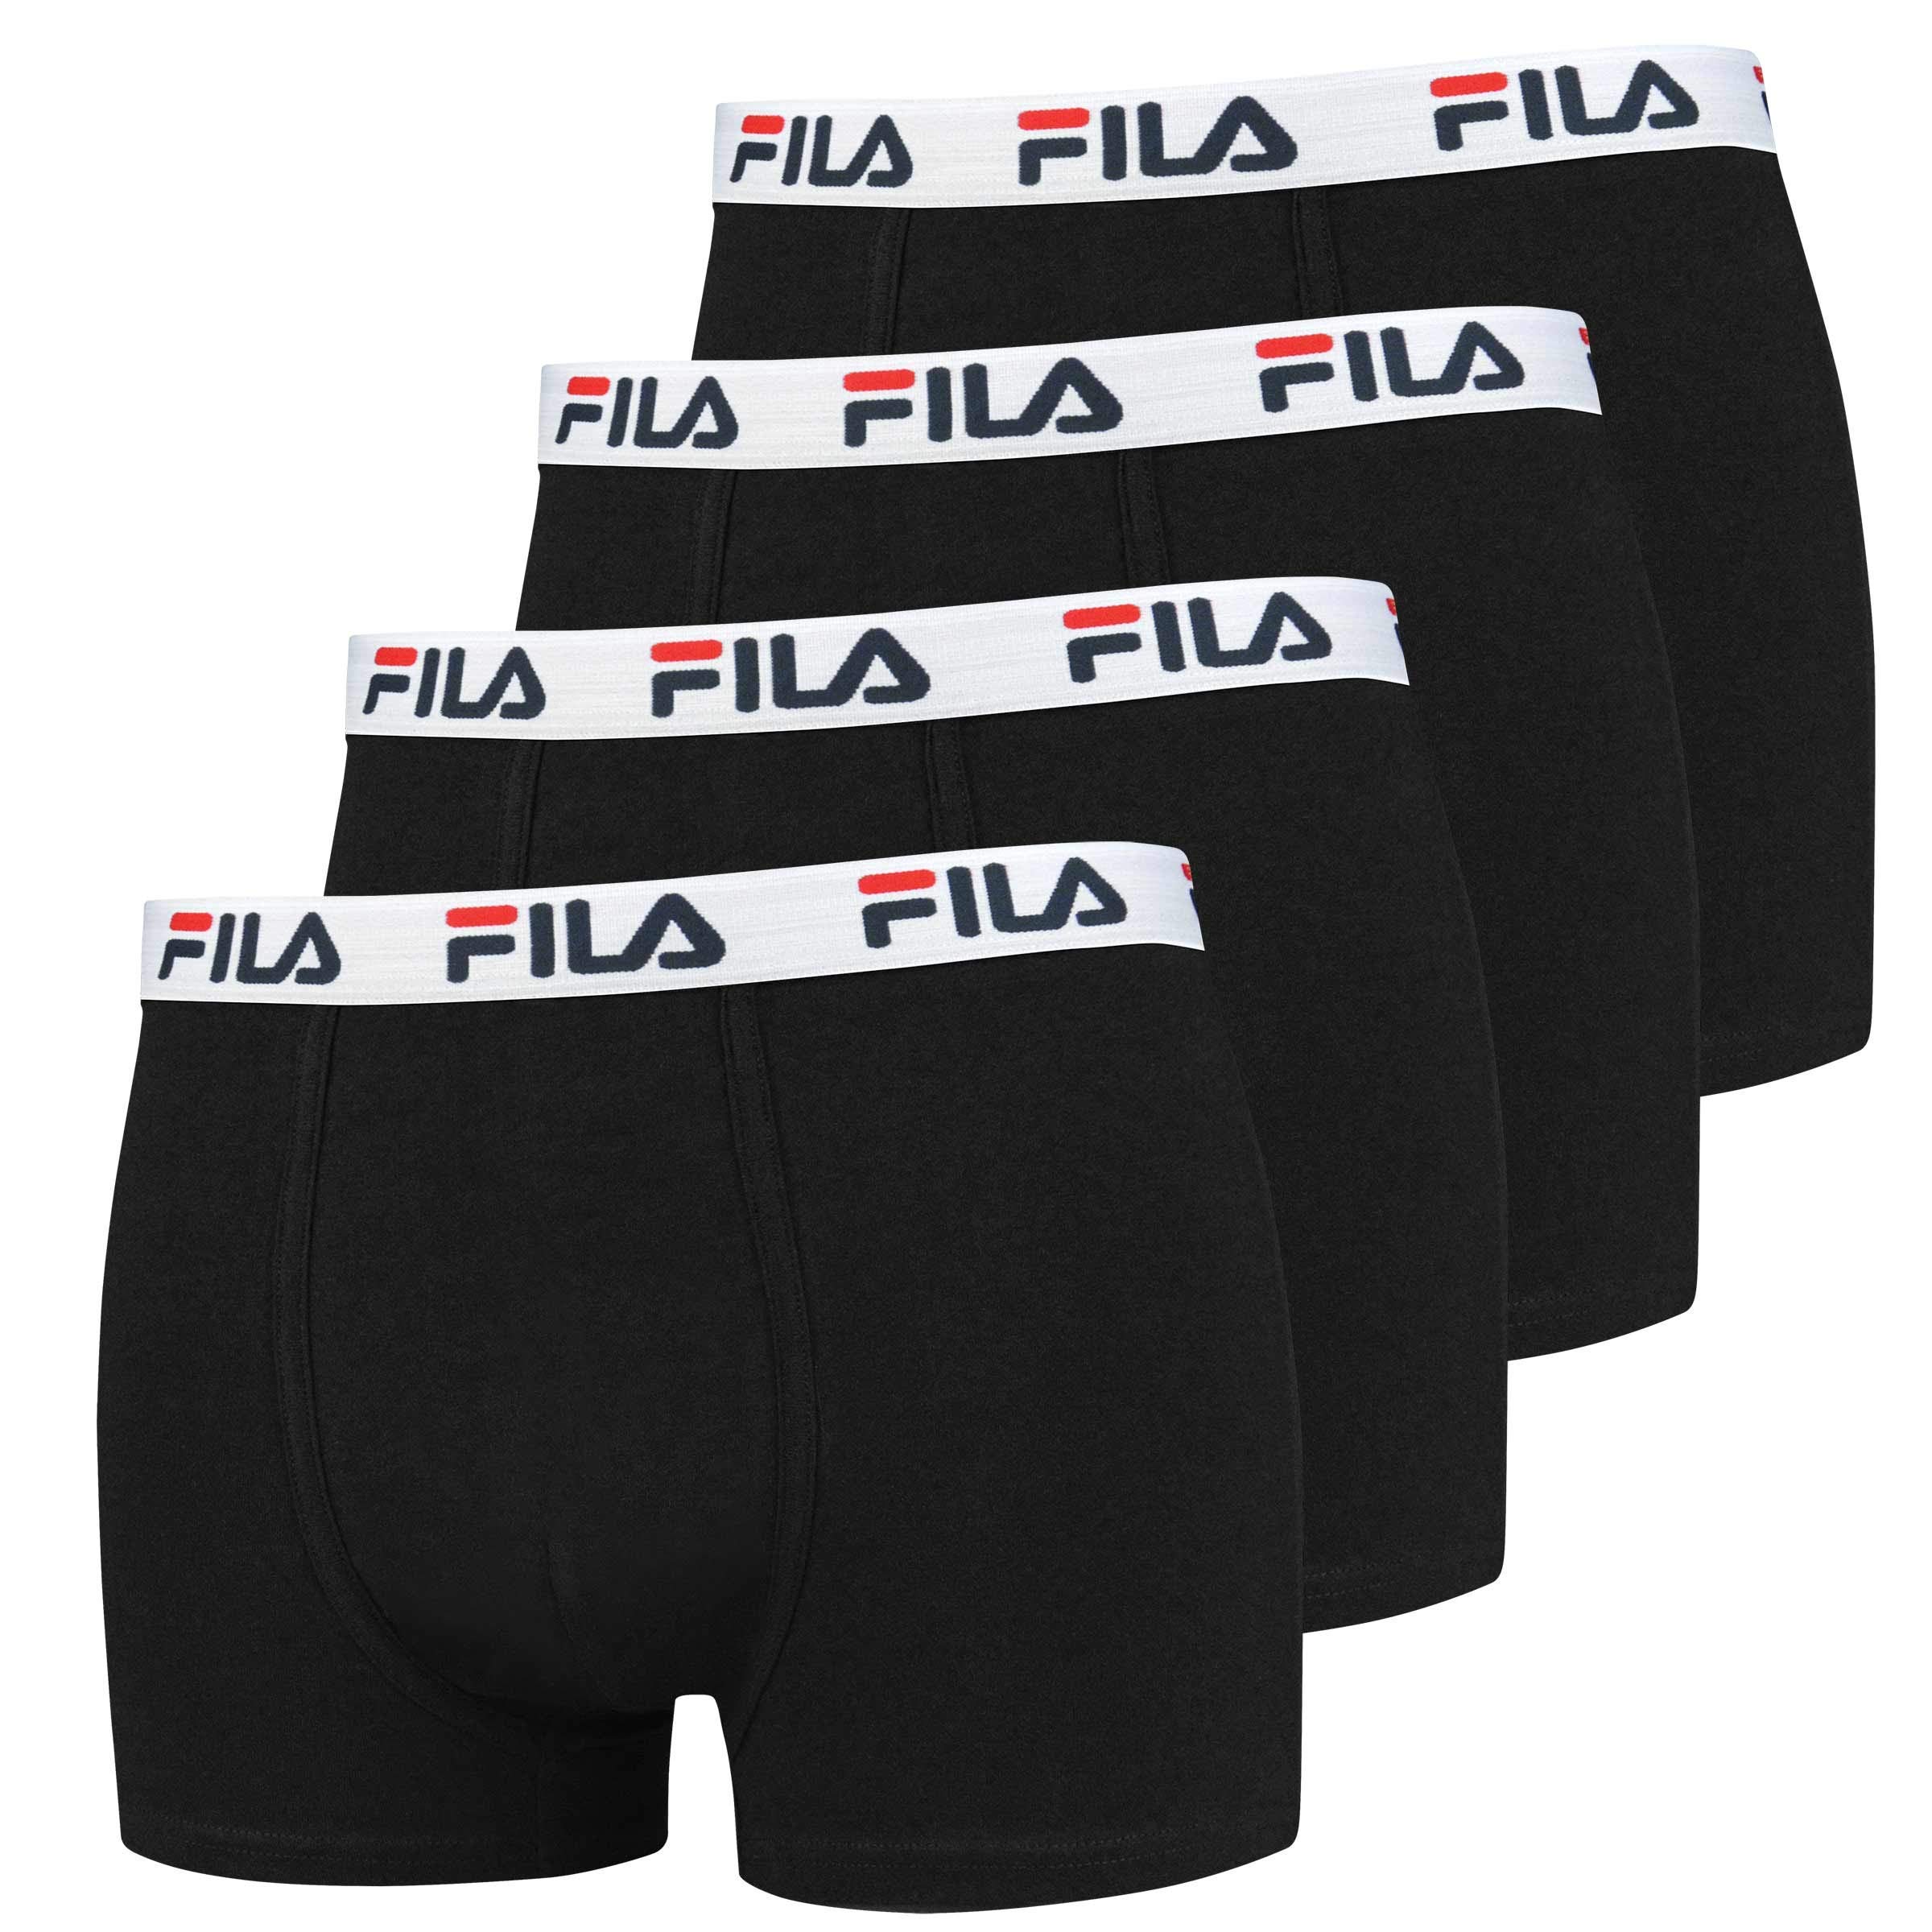 FILA 4er Vorteilspack Herren Boxershorts - Logo Pants - Einfarbig - viele Farben (Schwarz, S - 4er Pack)